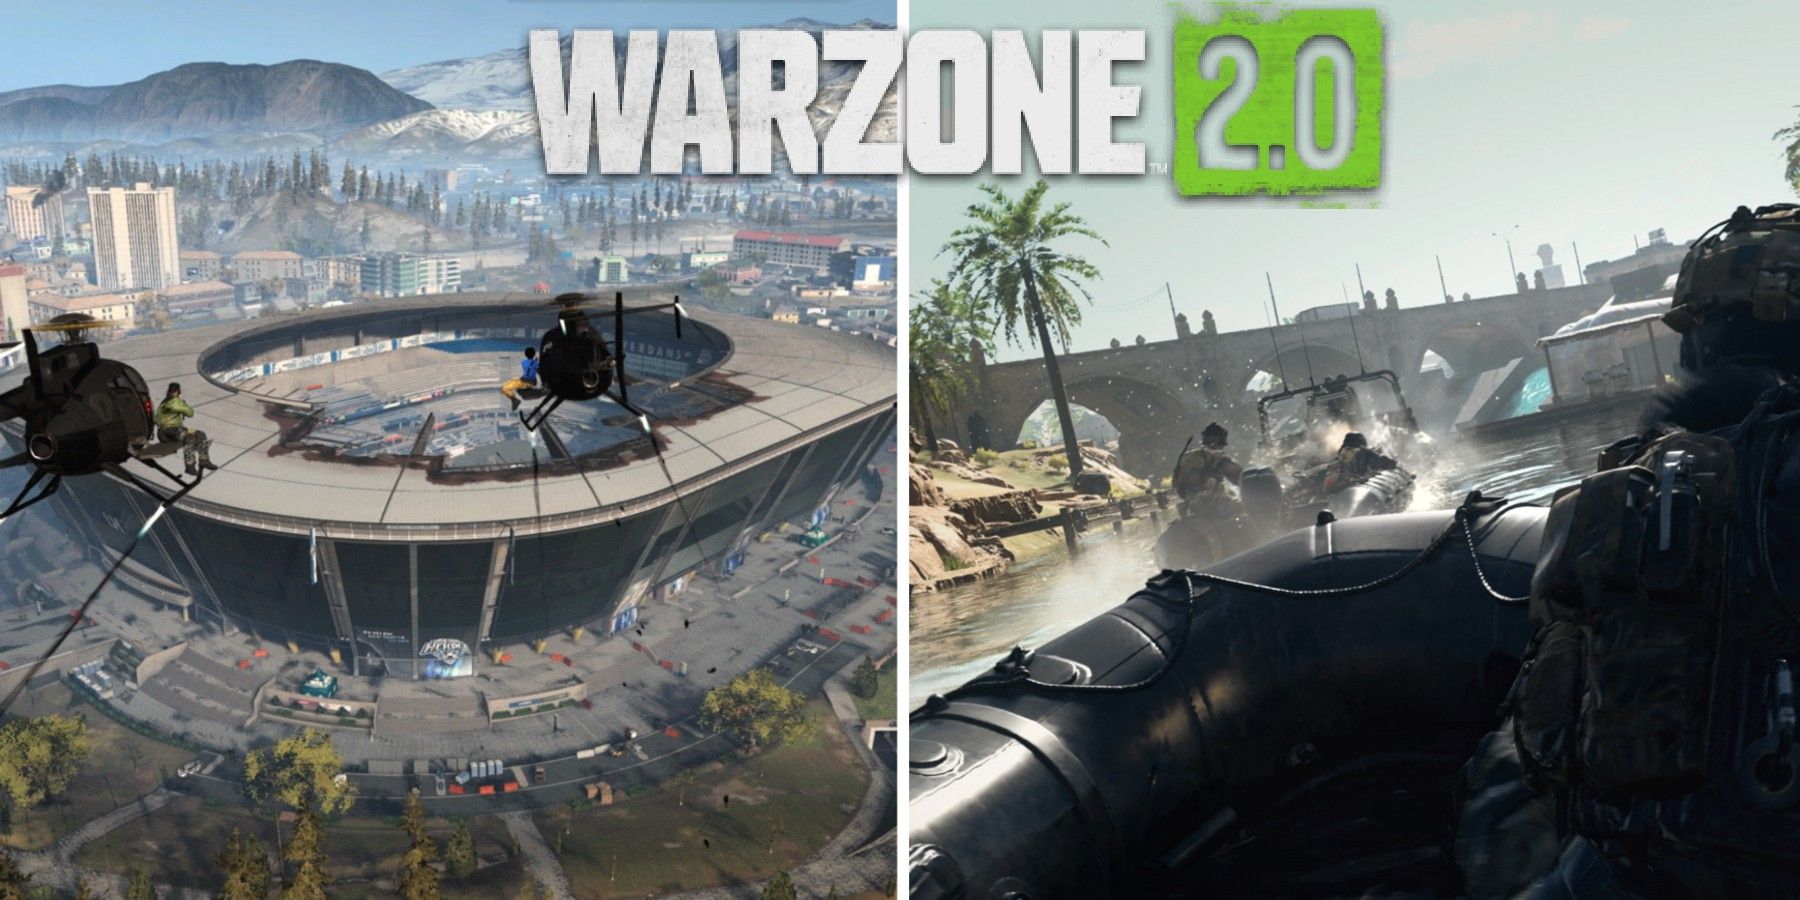 How will Warzone 2 fare compared to the original?